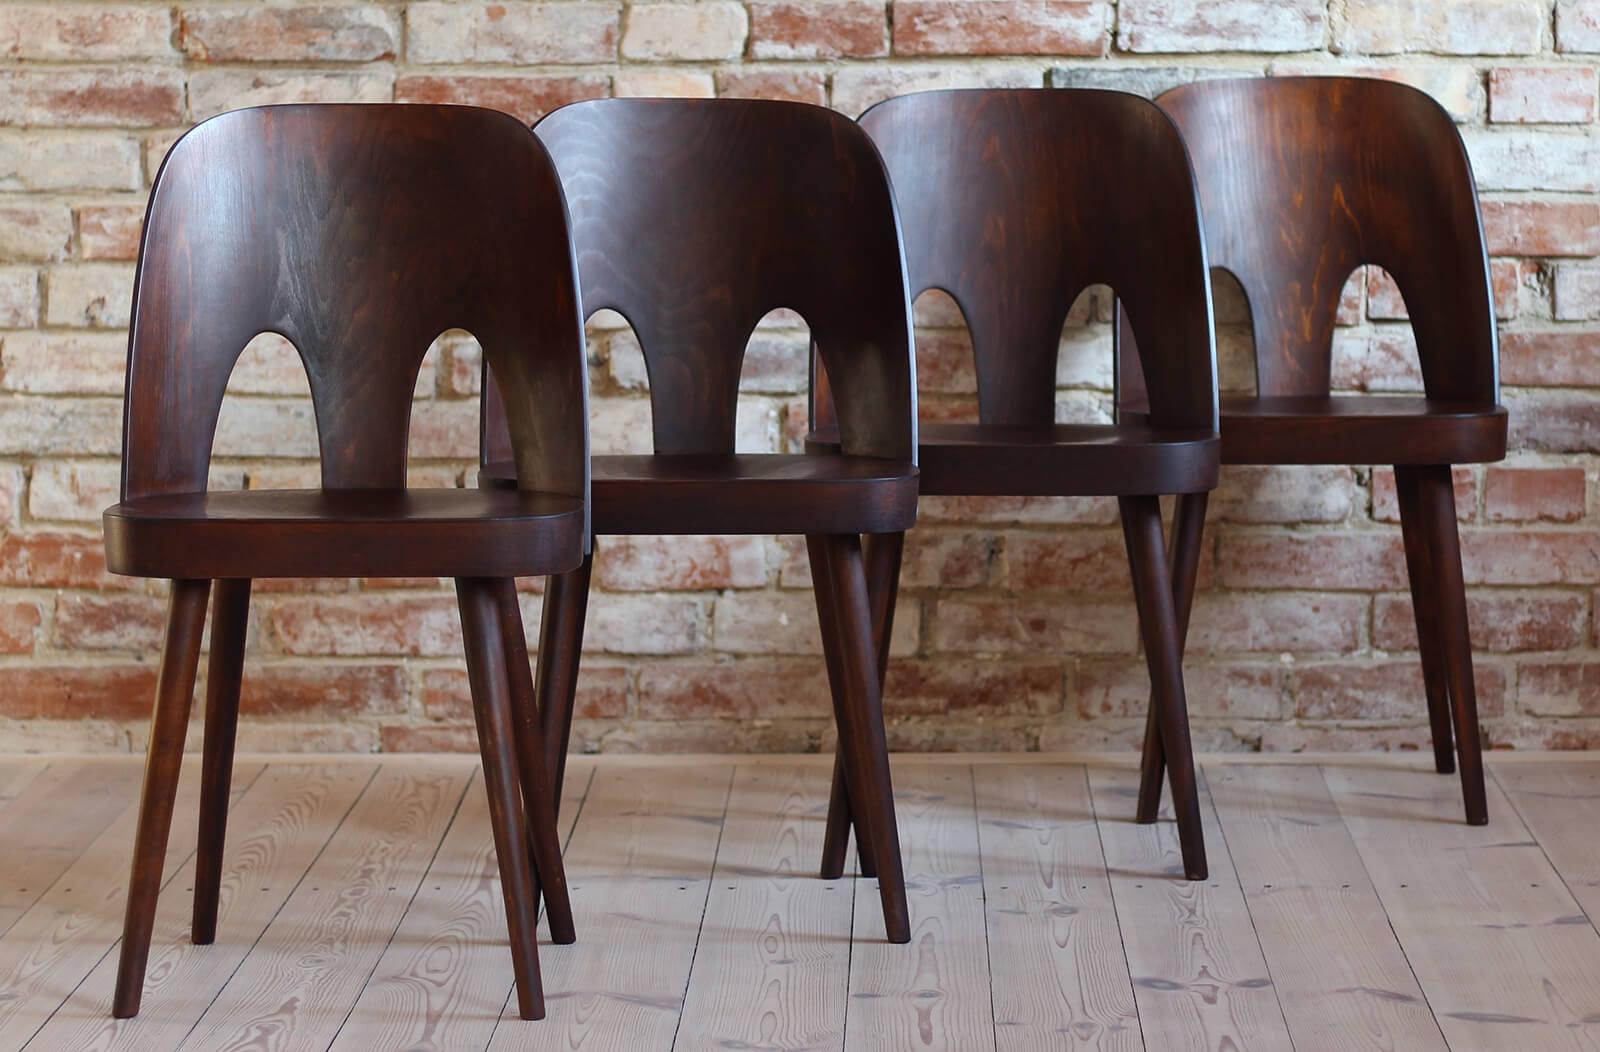 Cet ensemble de quatre chaises de salle à manger vintage a été conçu par Oswald Haerdtl dans les années 1950, célèbre designer autrichien. Avec M. Josef Hoffmann, il a conçu la terrasse du café de l'exposition Werkbund de Vienne de 1930, où ils ont